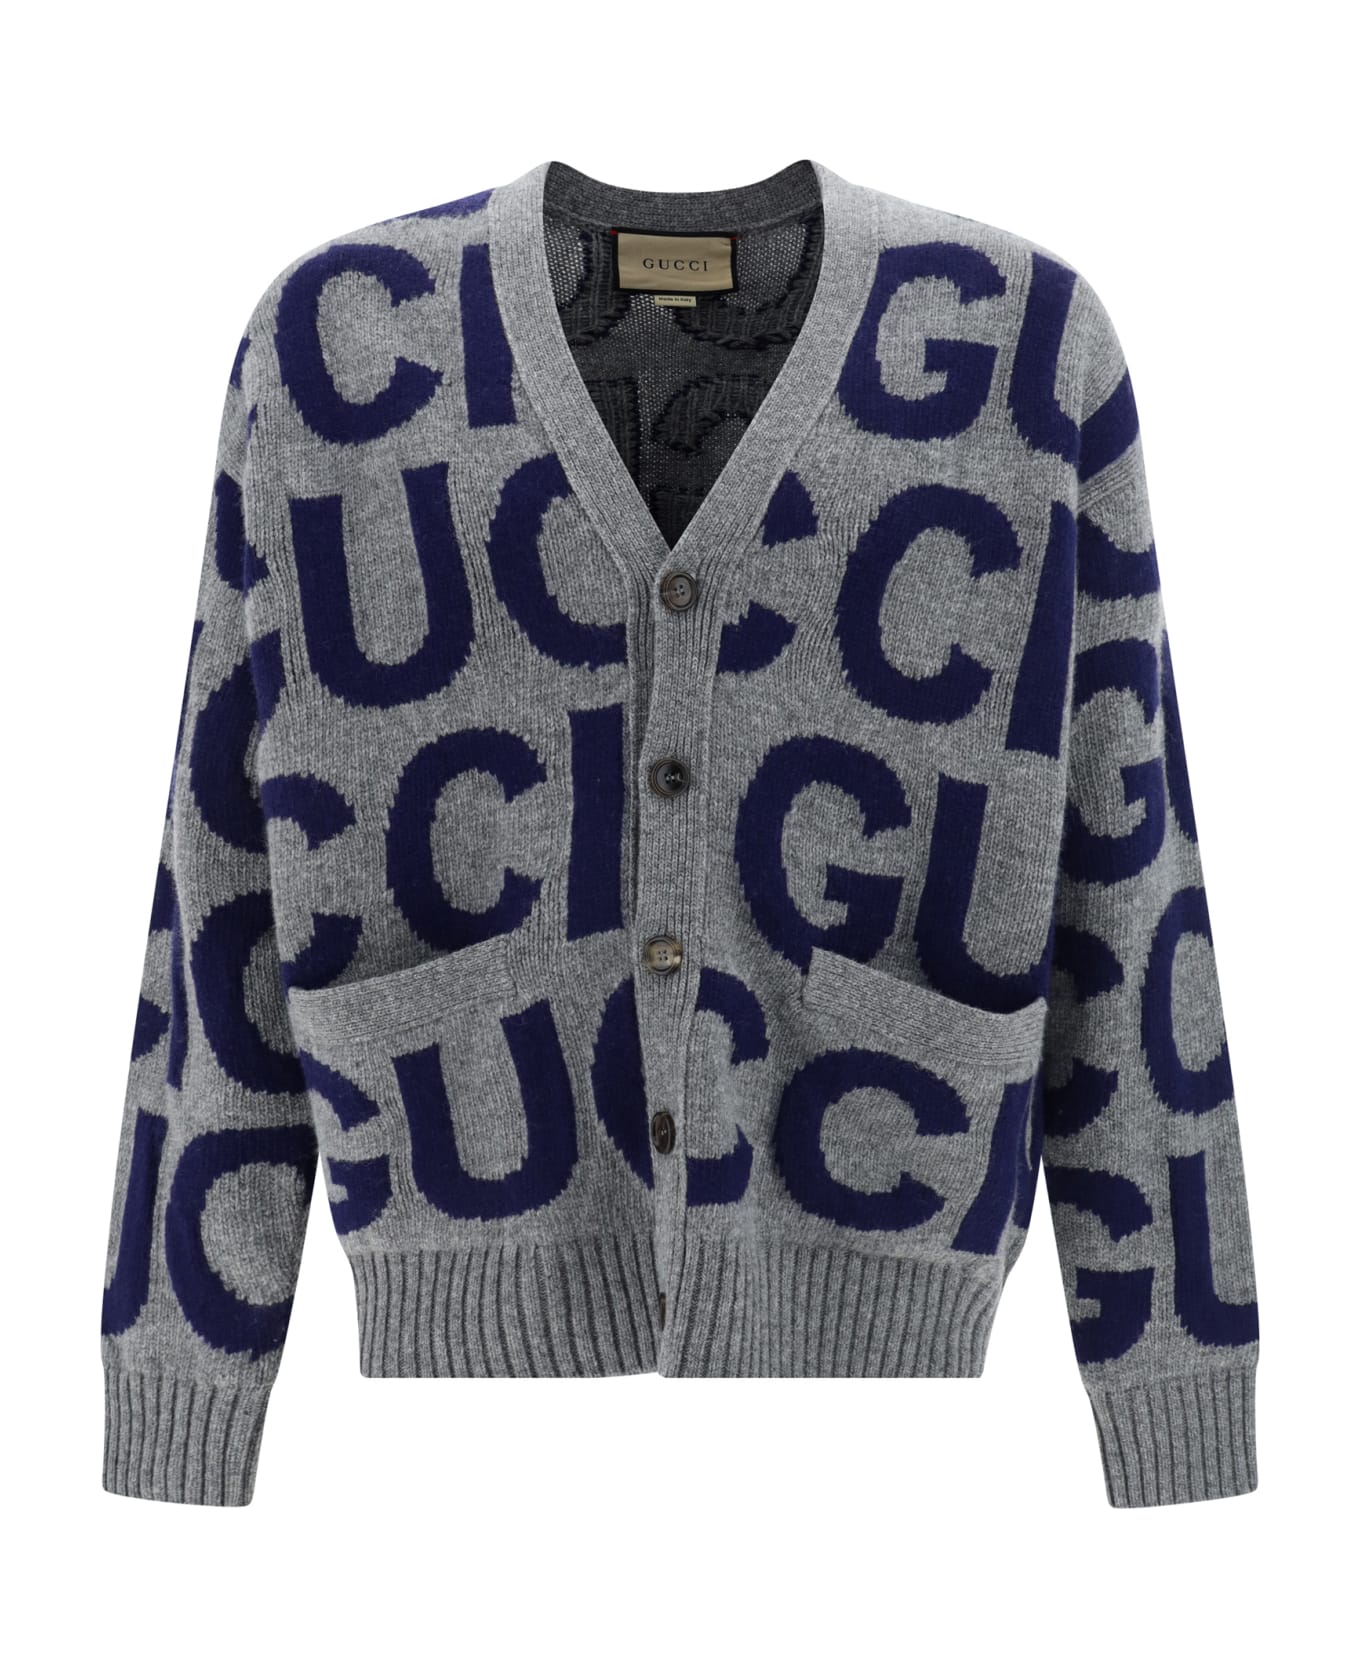 Gucci Cardigan - Grey/blue